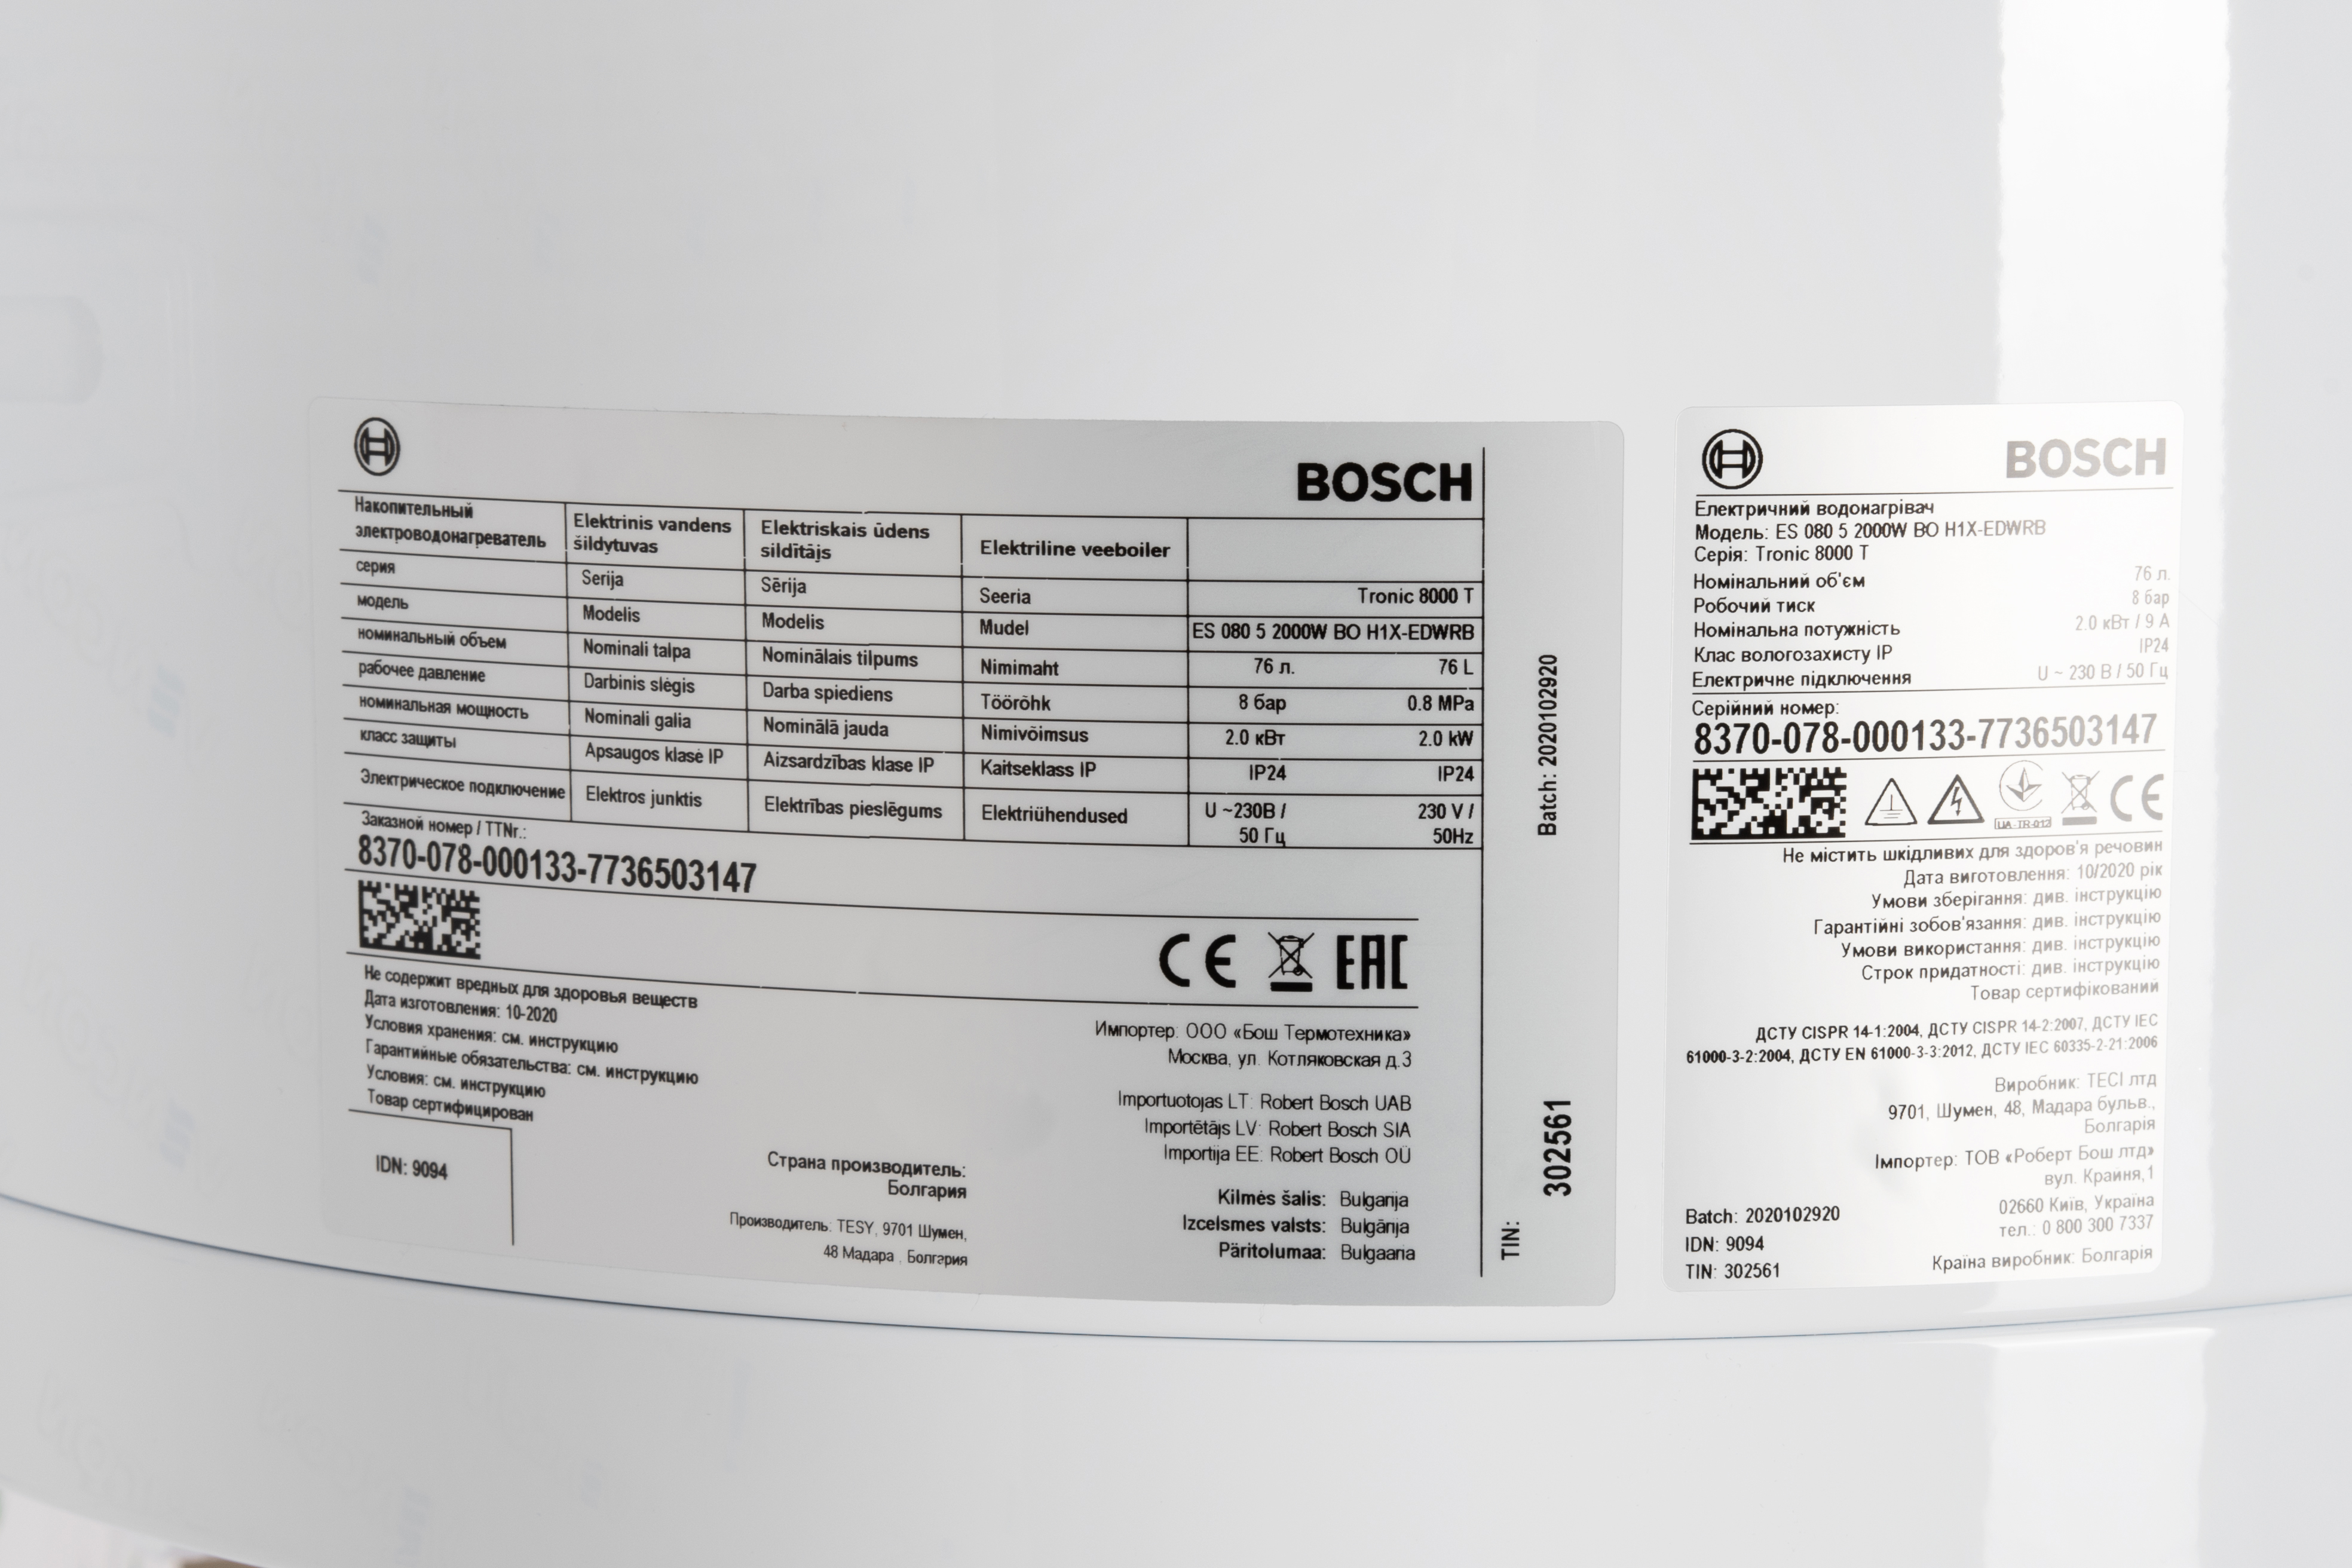 Водонагрівач Bosch Tronic 8000T ES 080-5 2000W BO H1X-EDWRB (7736503147) характеристики - фотографія 7